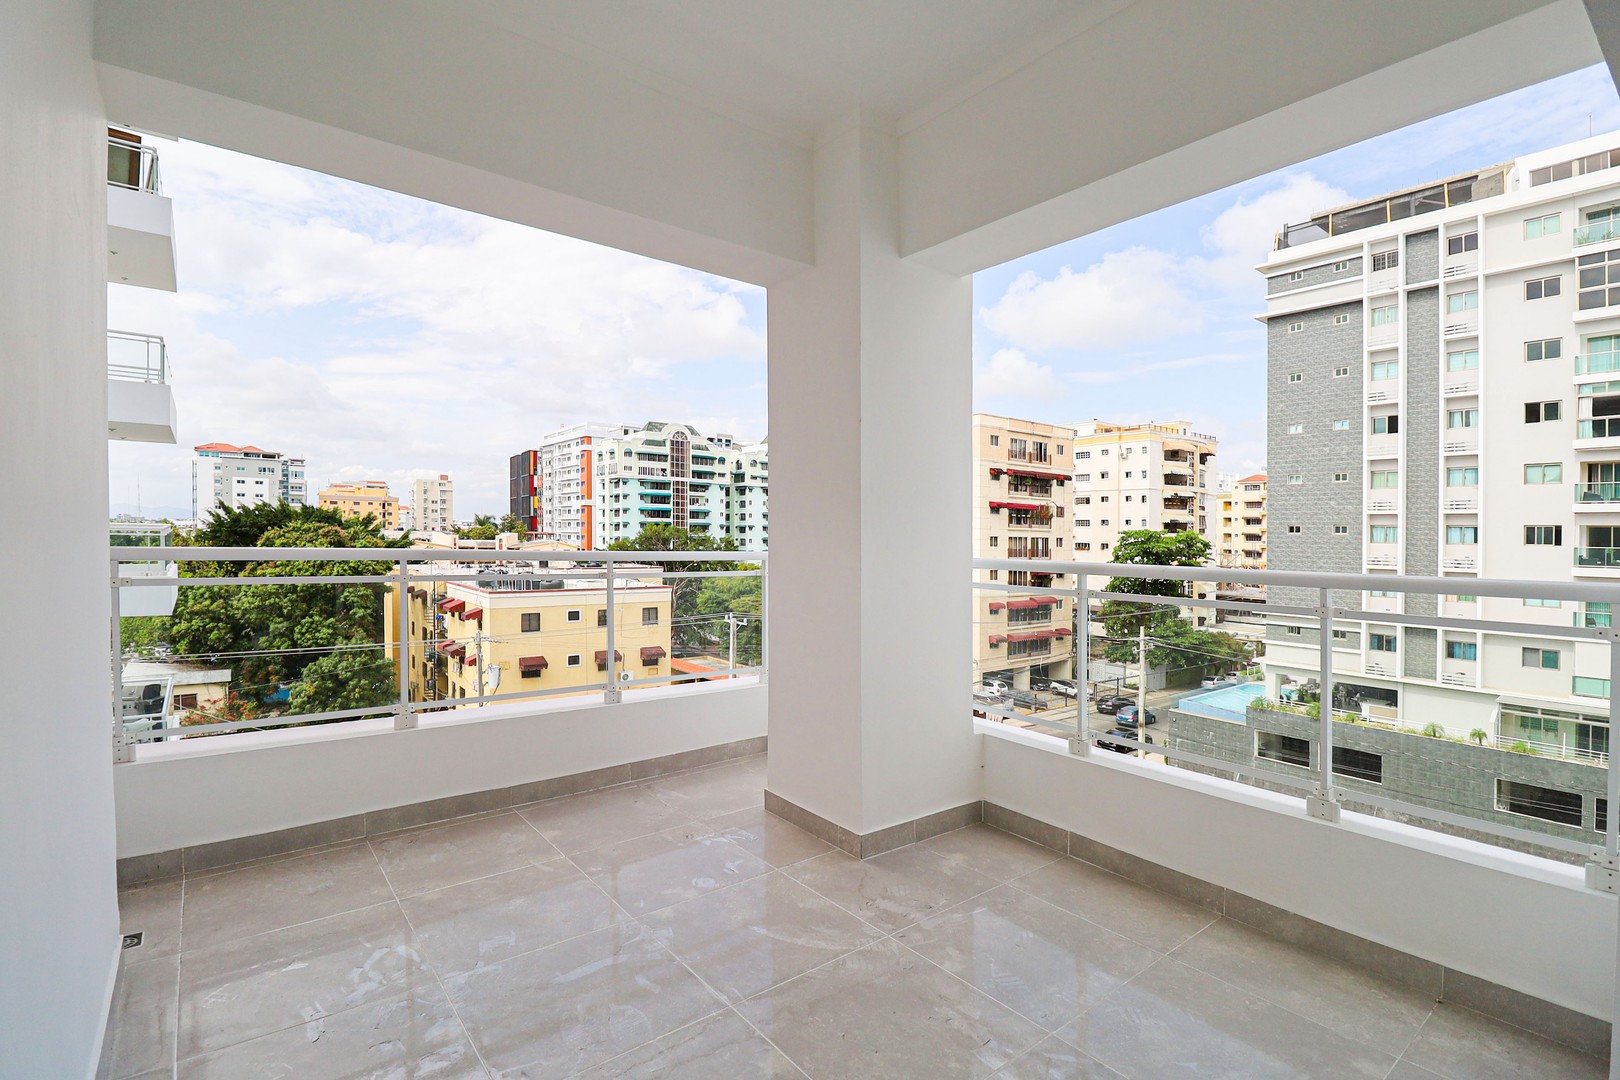 apartamentos - Vendo Apartamento 5to Piso En Evaristo Morales
CODIGO: ND625